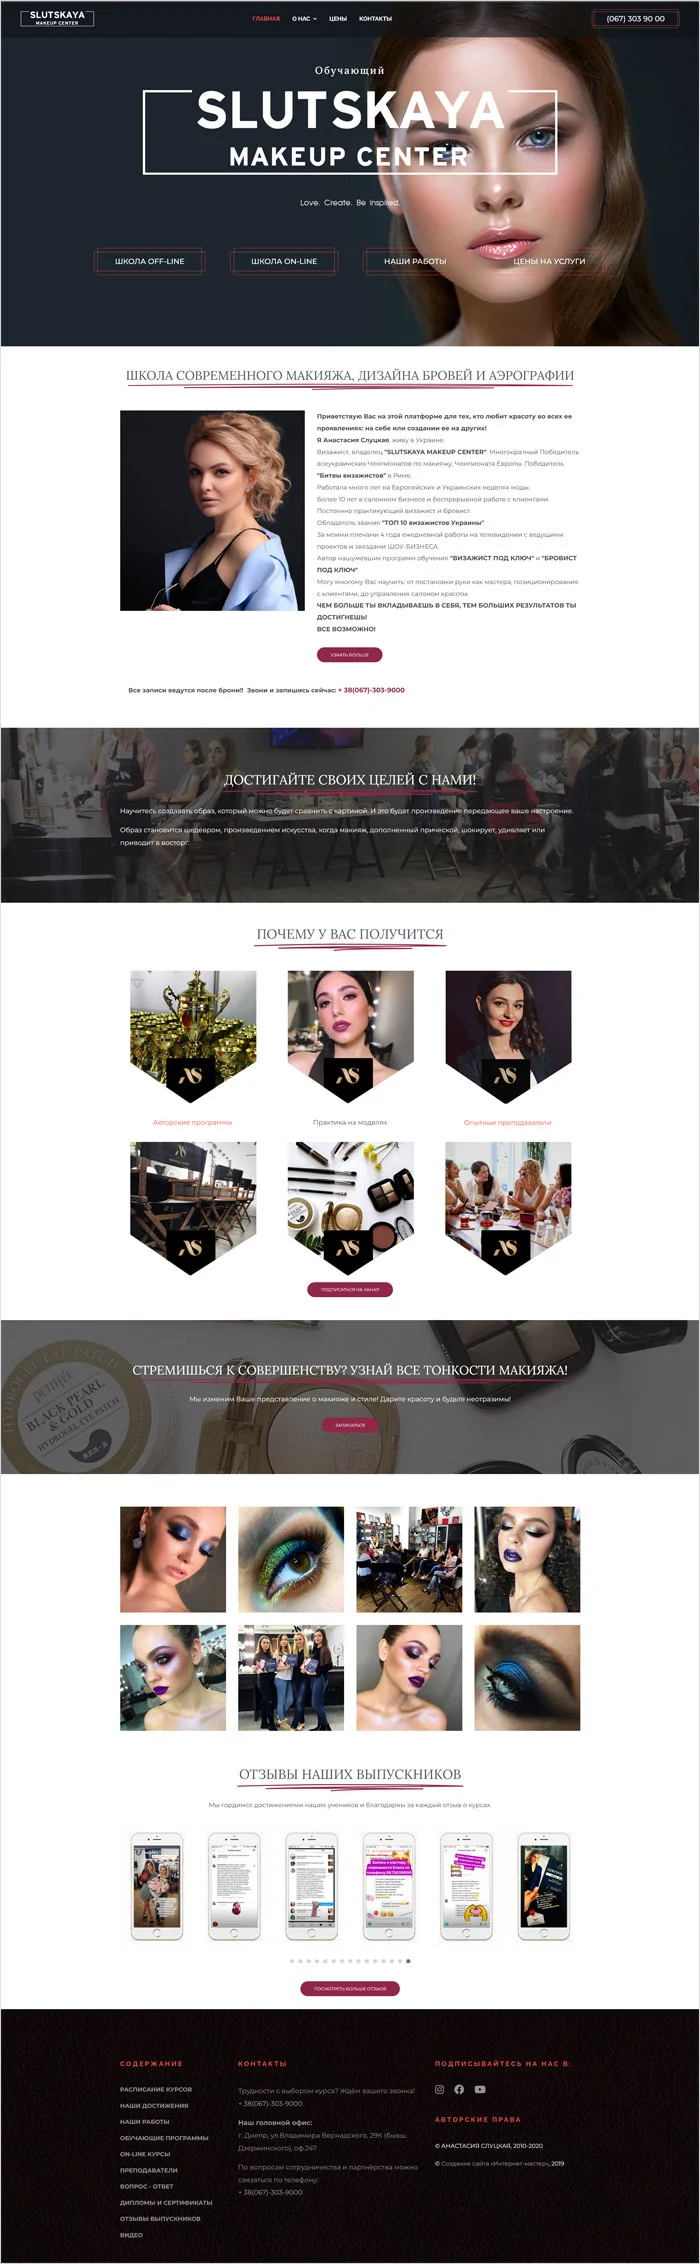 Создание сайта школы макияжа Днепр Украина, разработка интернет магазина Днепр.